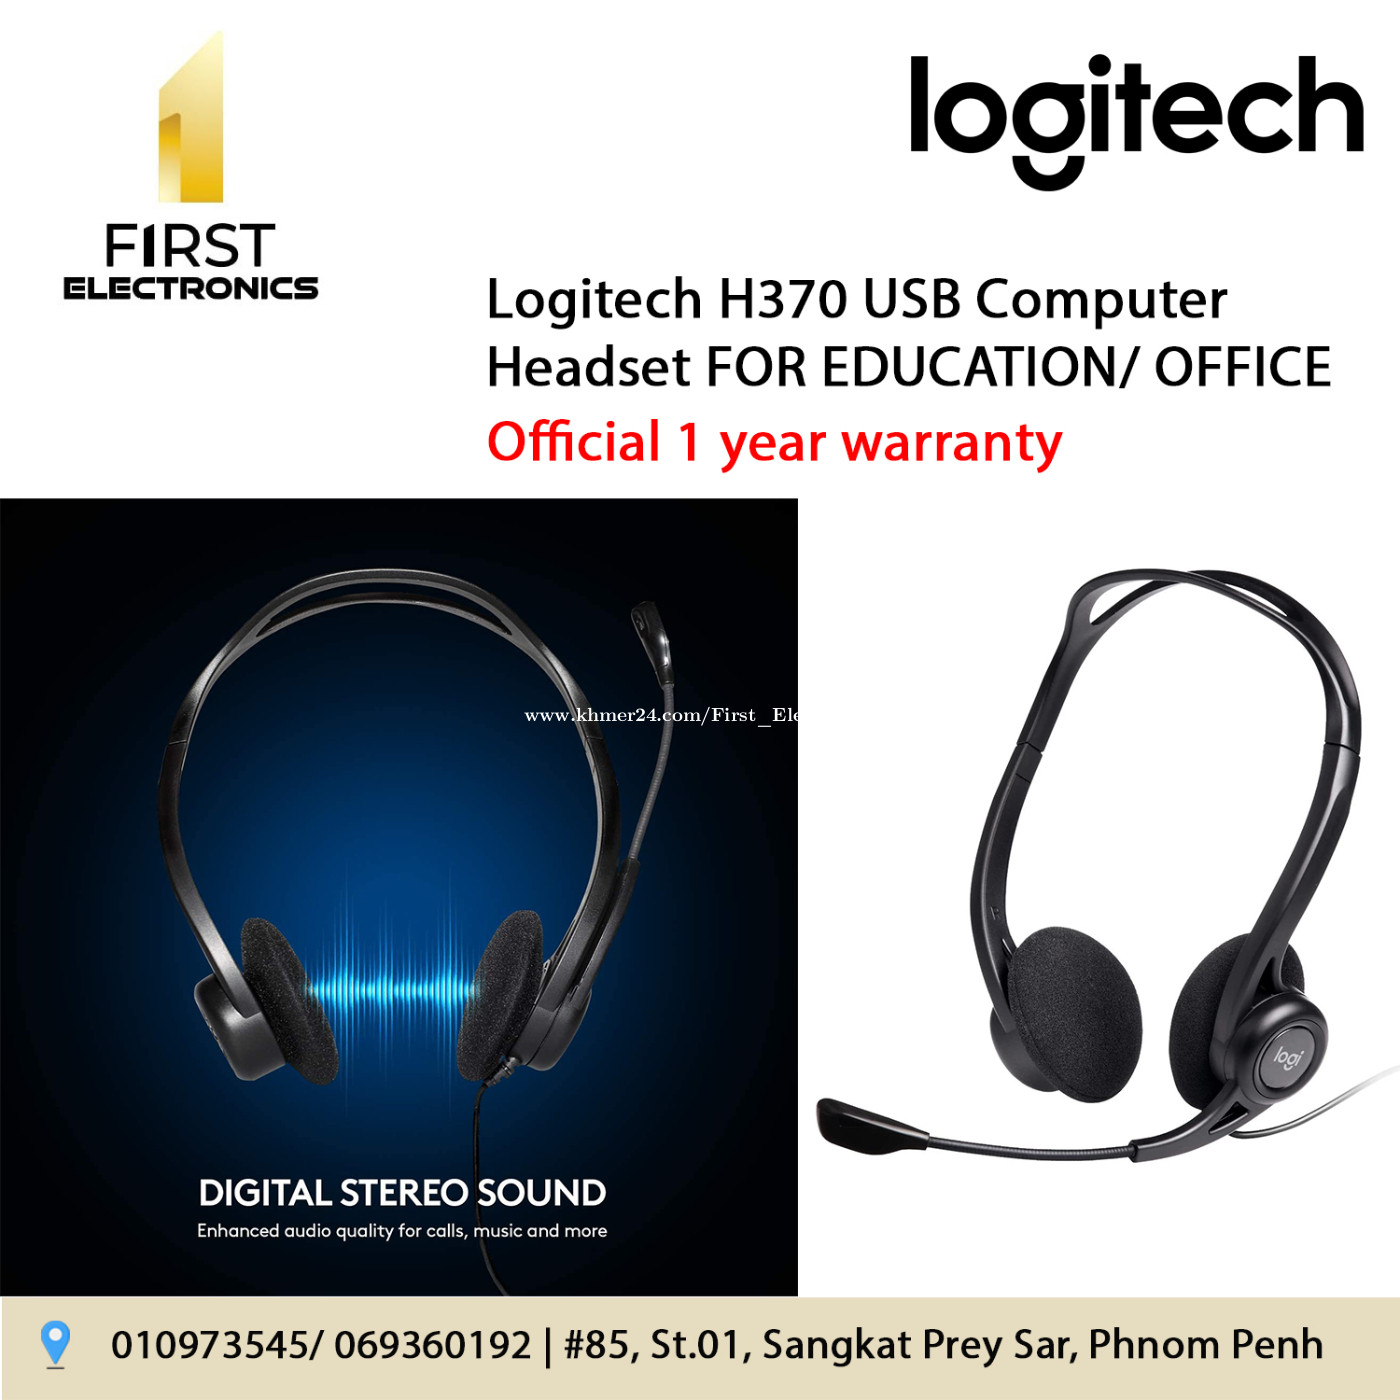 Logitech H370 USB Computer Headset